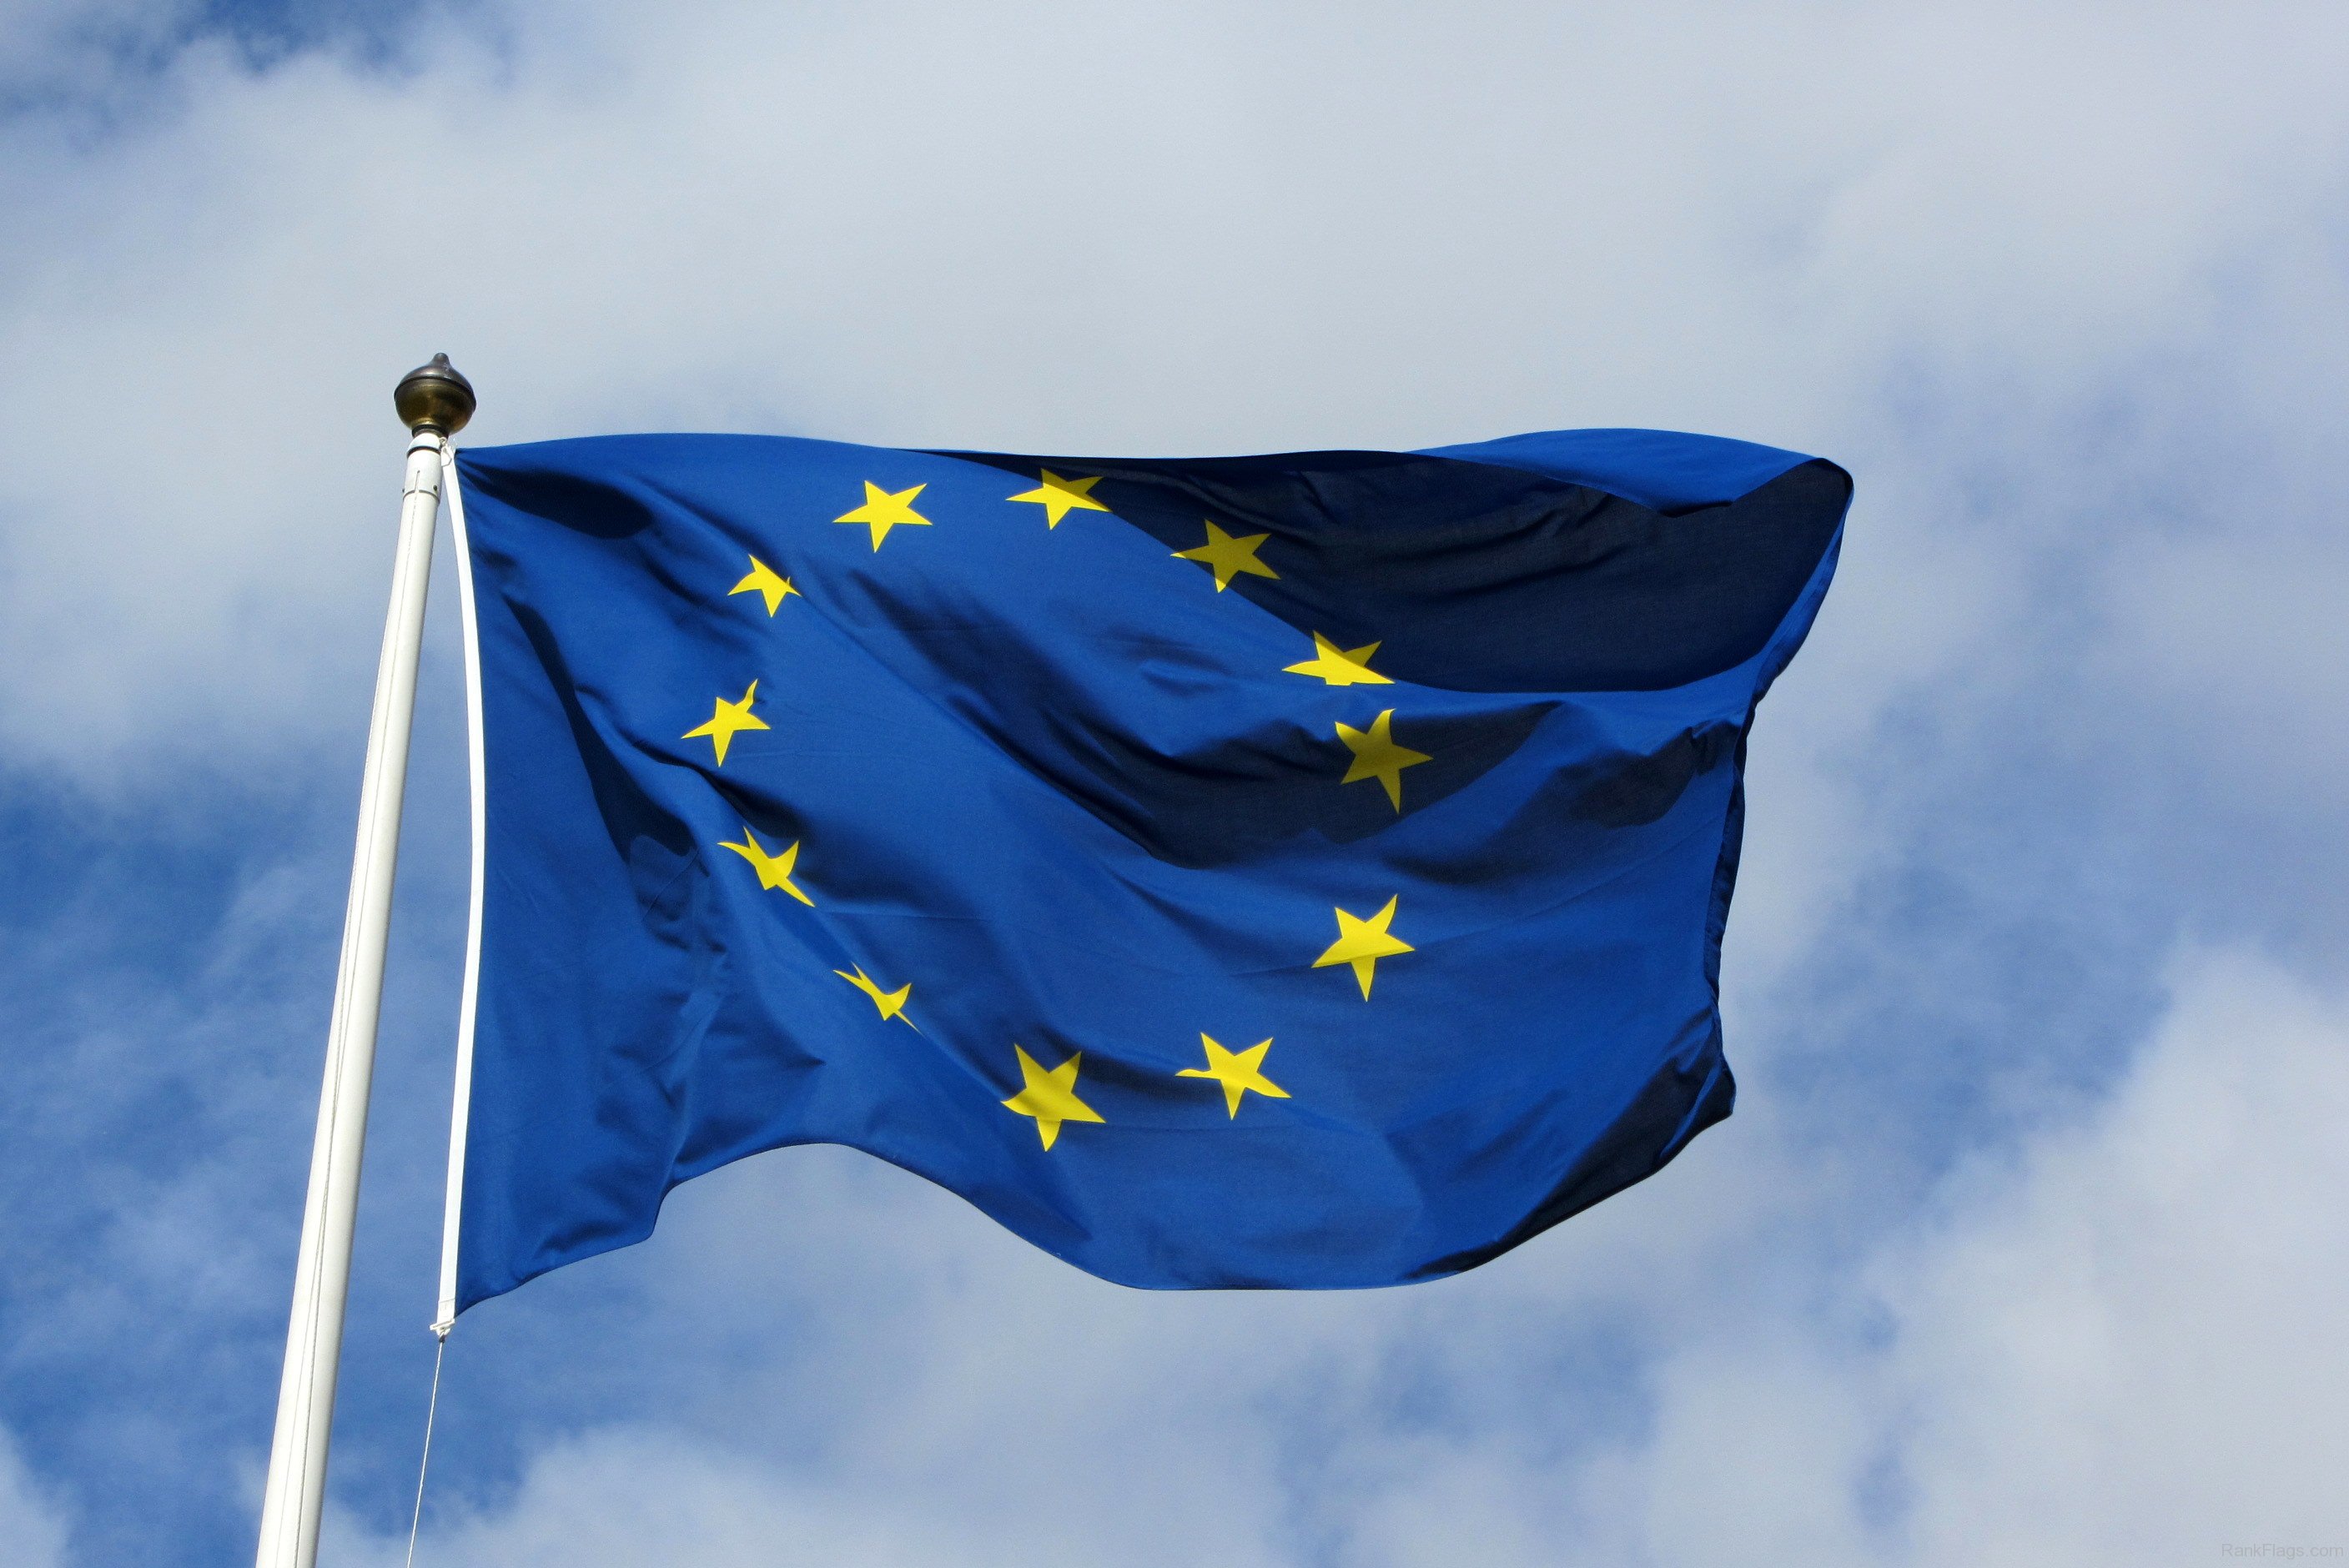 Flagge der Europäischen Union - RankFlags.com – Sammlung von Flaggen